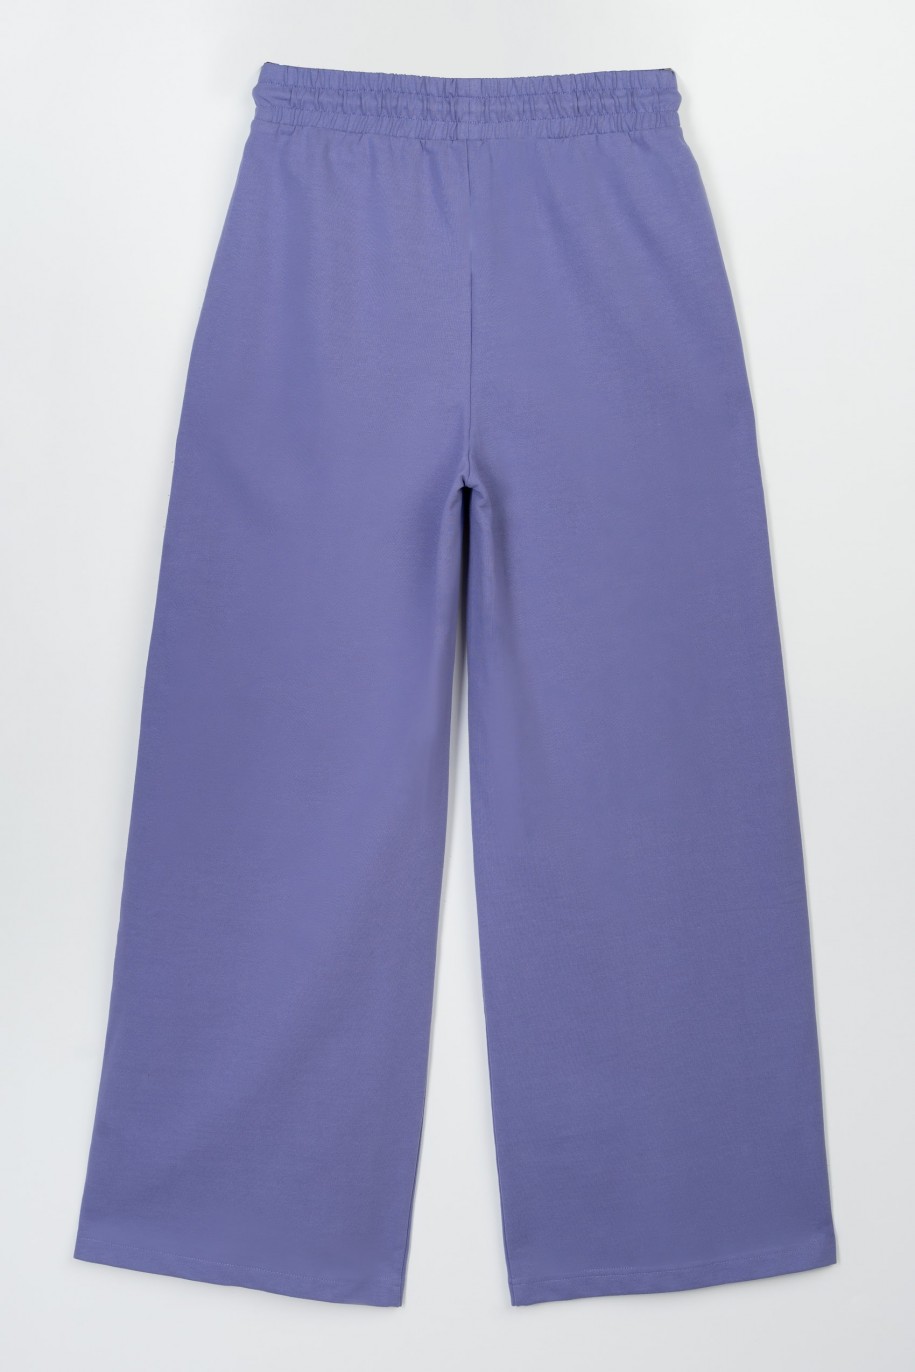 Fioletowe spodnie dresowe z nogawkami typu wide leg - 47341